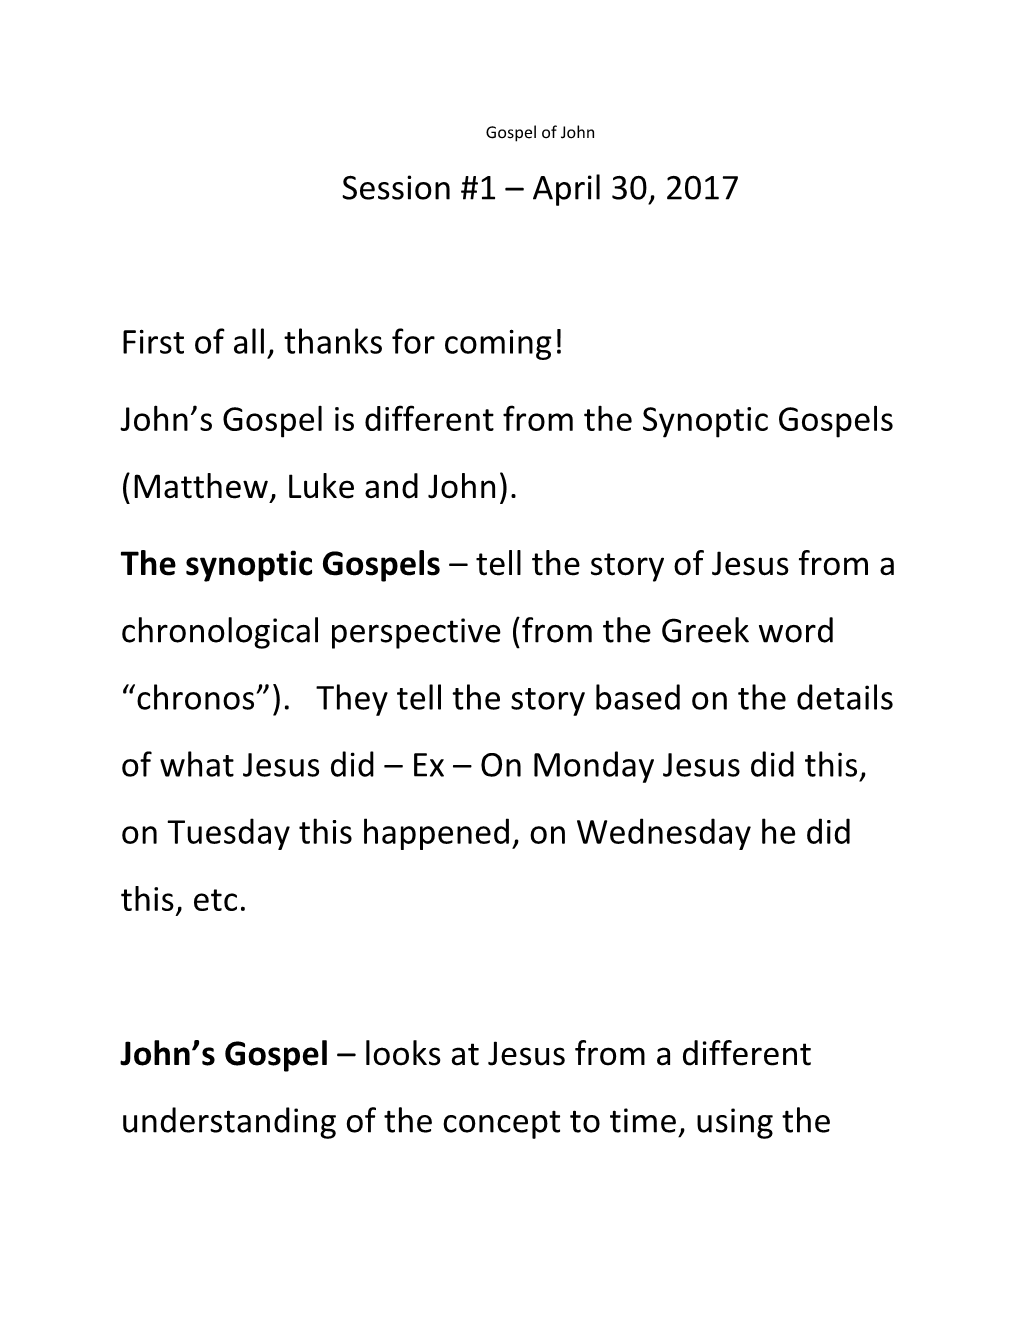 John's Gospel Is Different from the Synoptic Gospels (Matthew